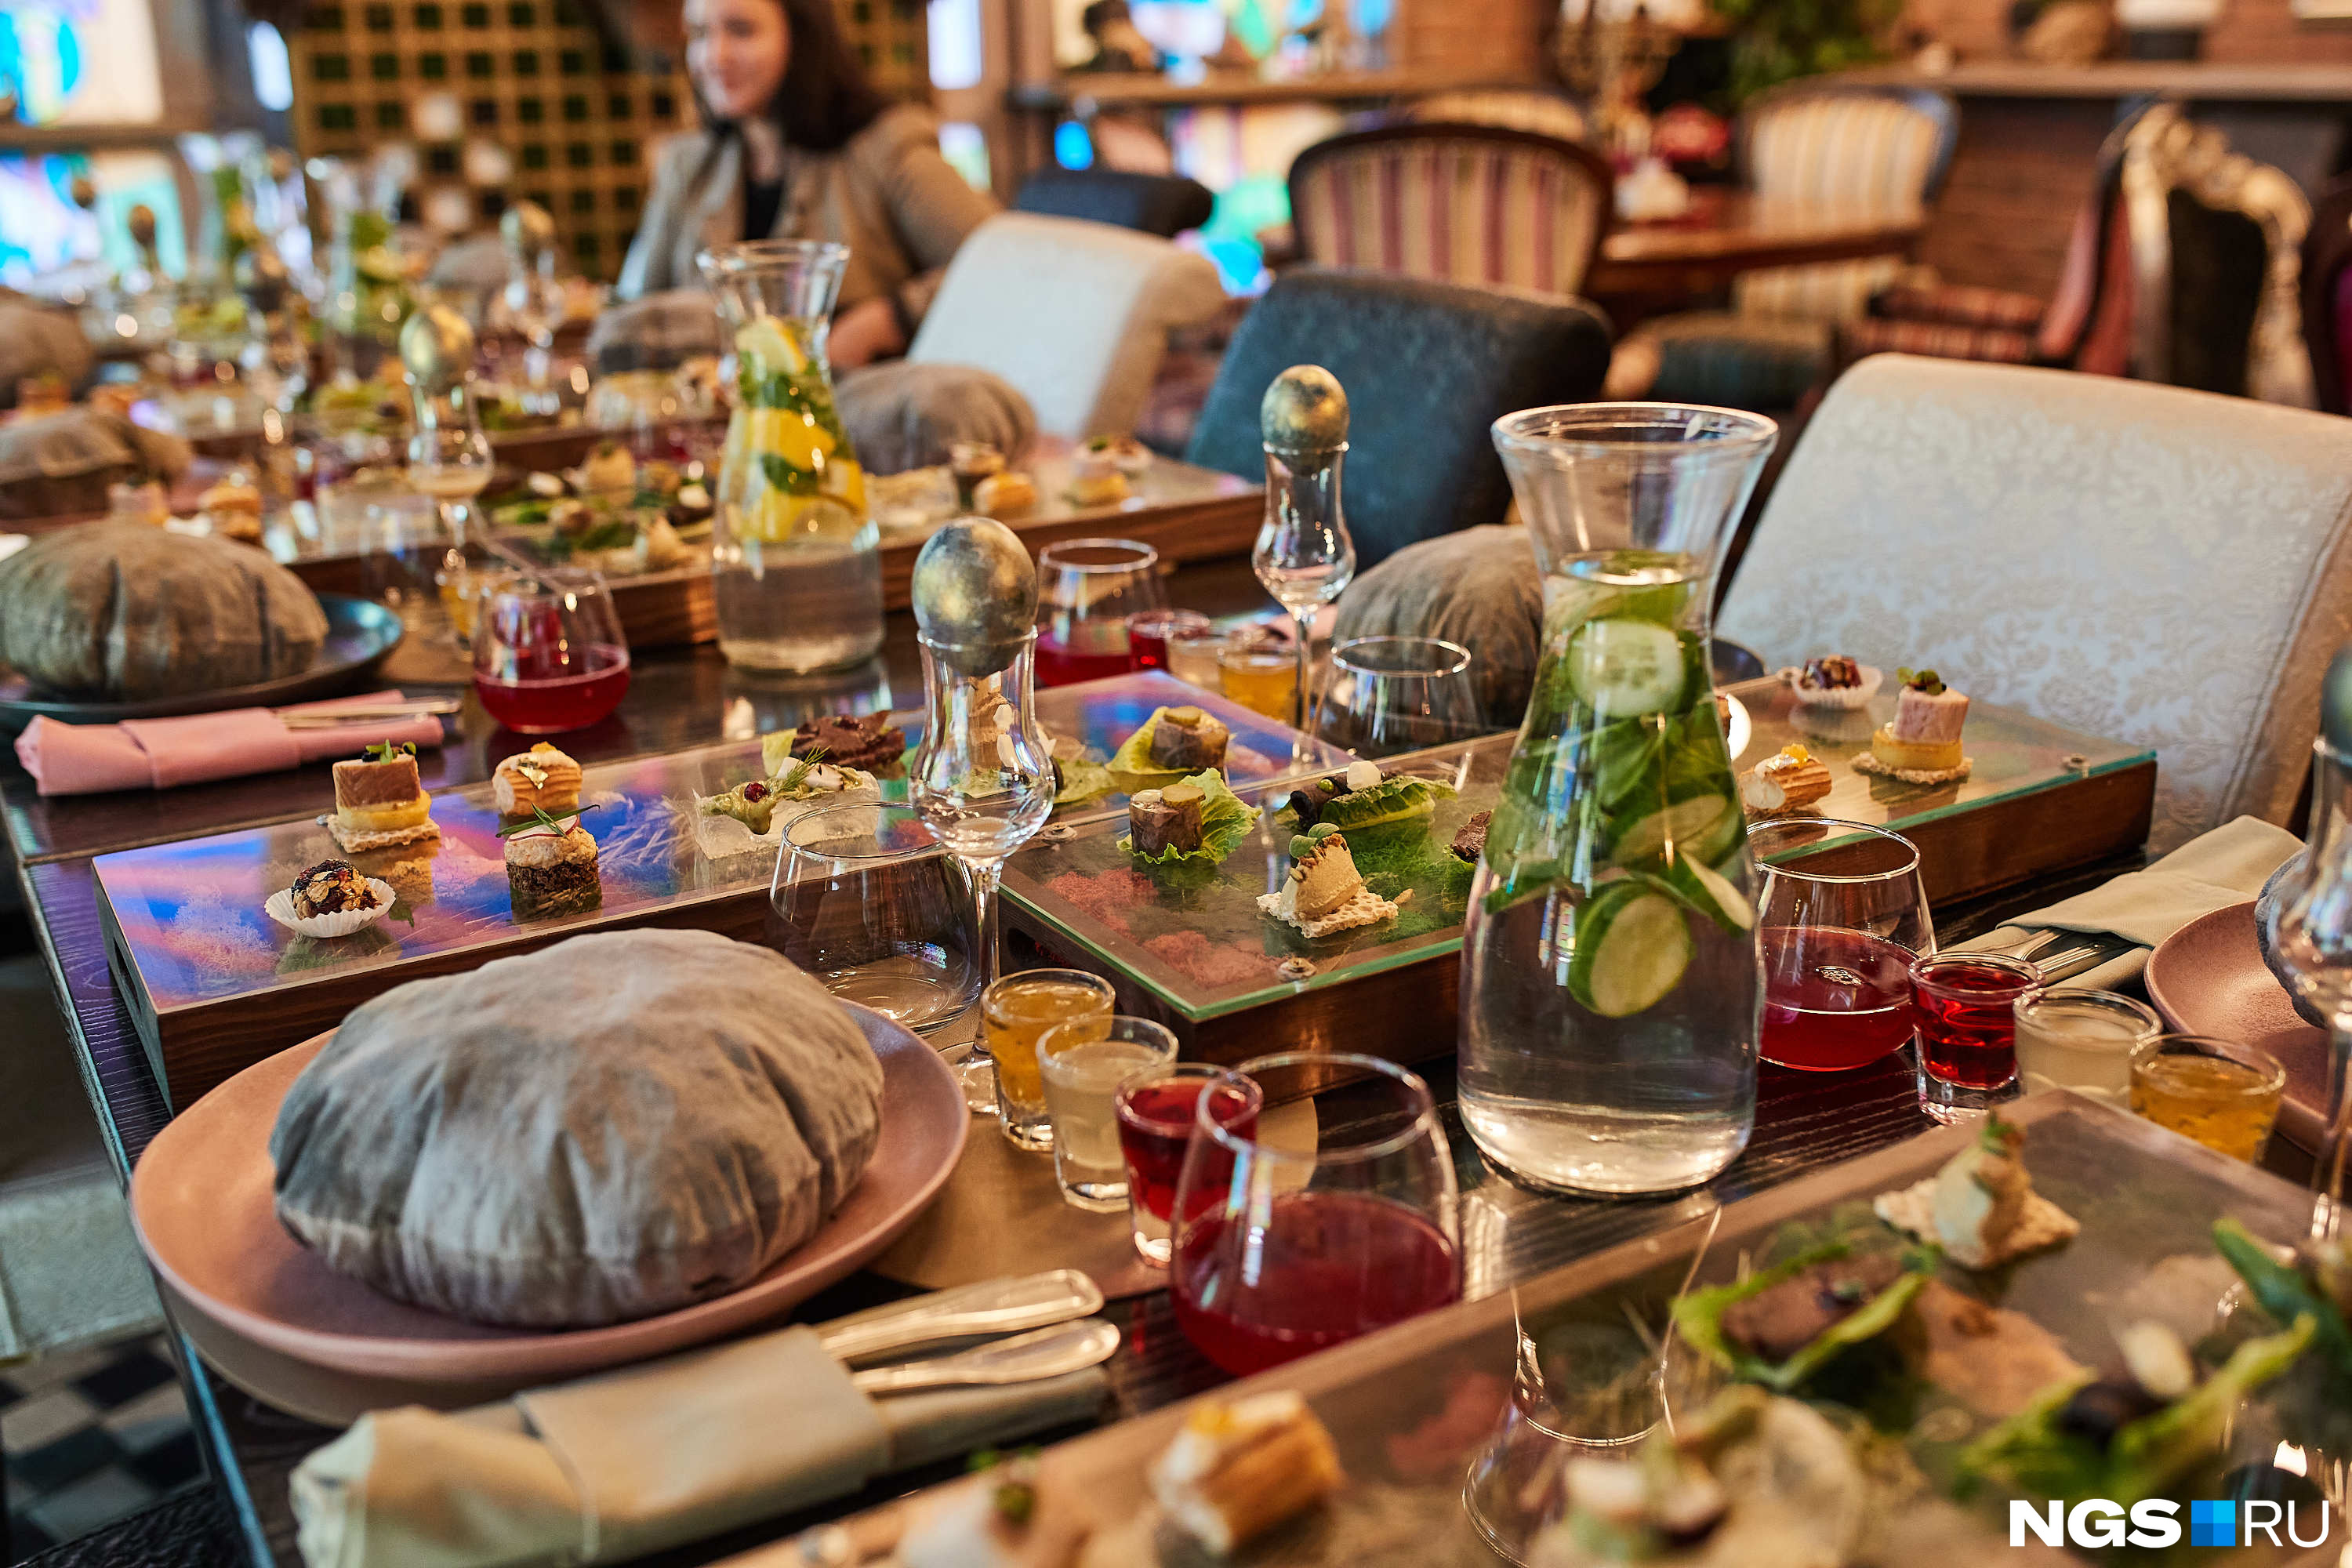 В ресторане можно побывать на гастрономическом спектакле в шести действиях. Среди блюд — сибирские деликатесы и десерт из черемухи по рецепту бабушки